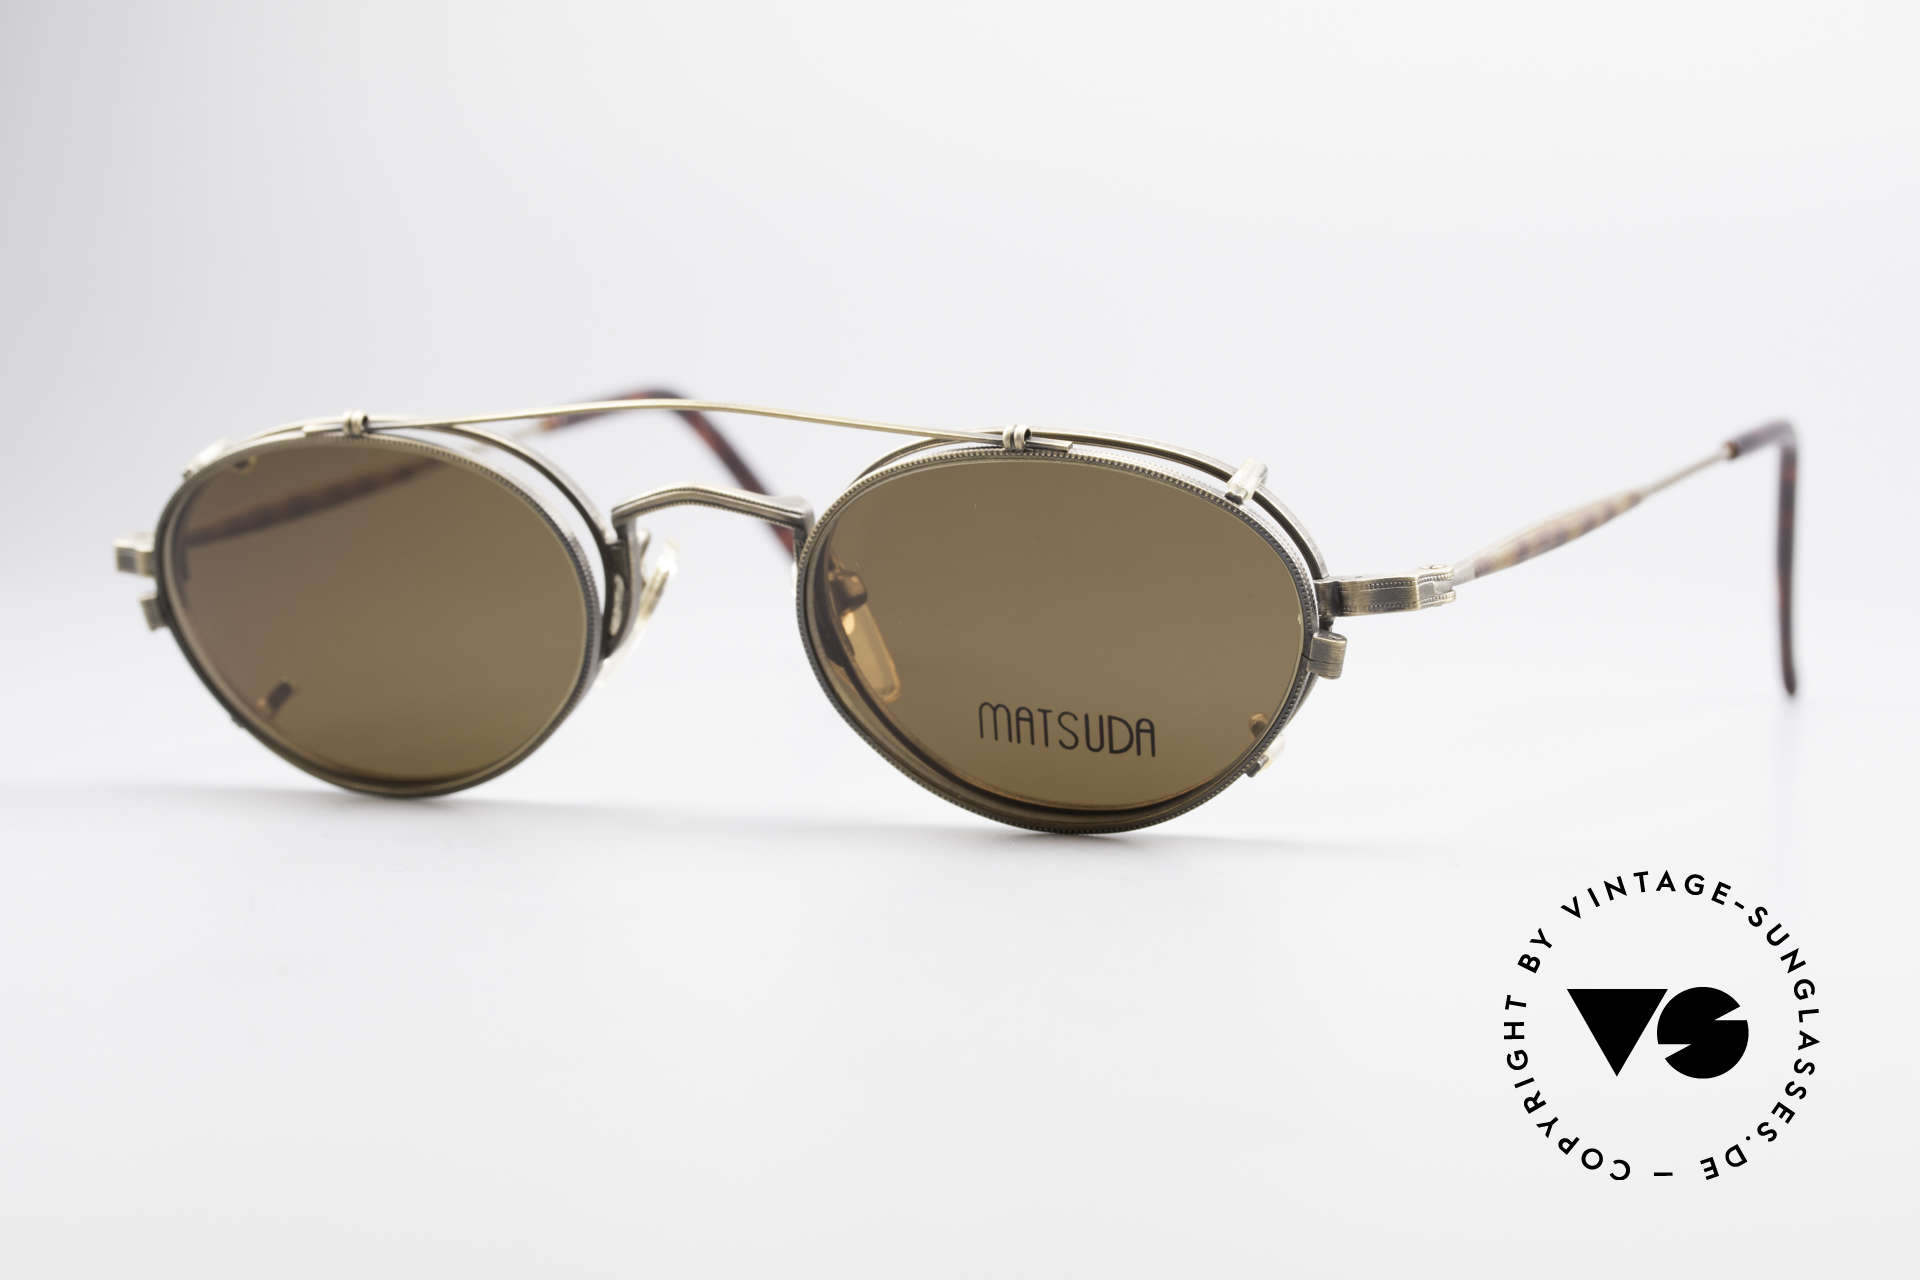 Matsuda 10102 Steampunk Vintage Brille, viele interessante Rahmendetails im "Retro-Futurismus", Passend für Herren